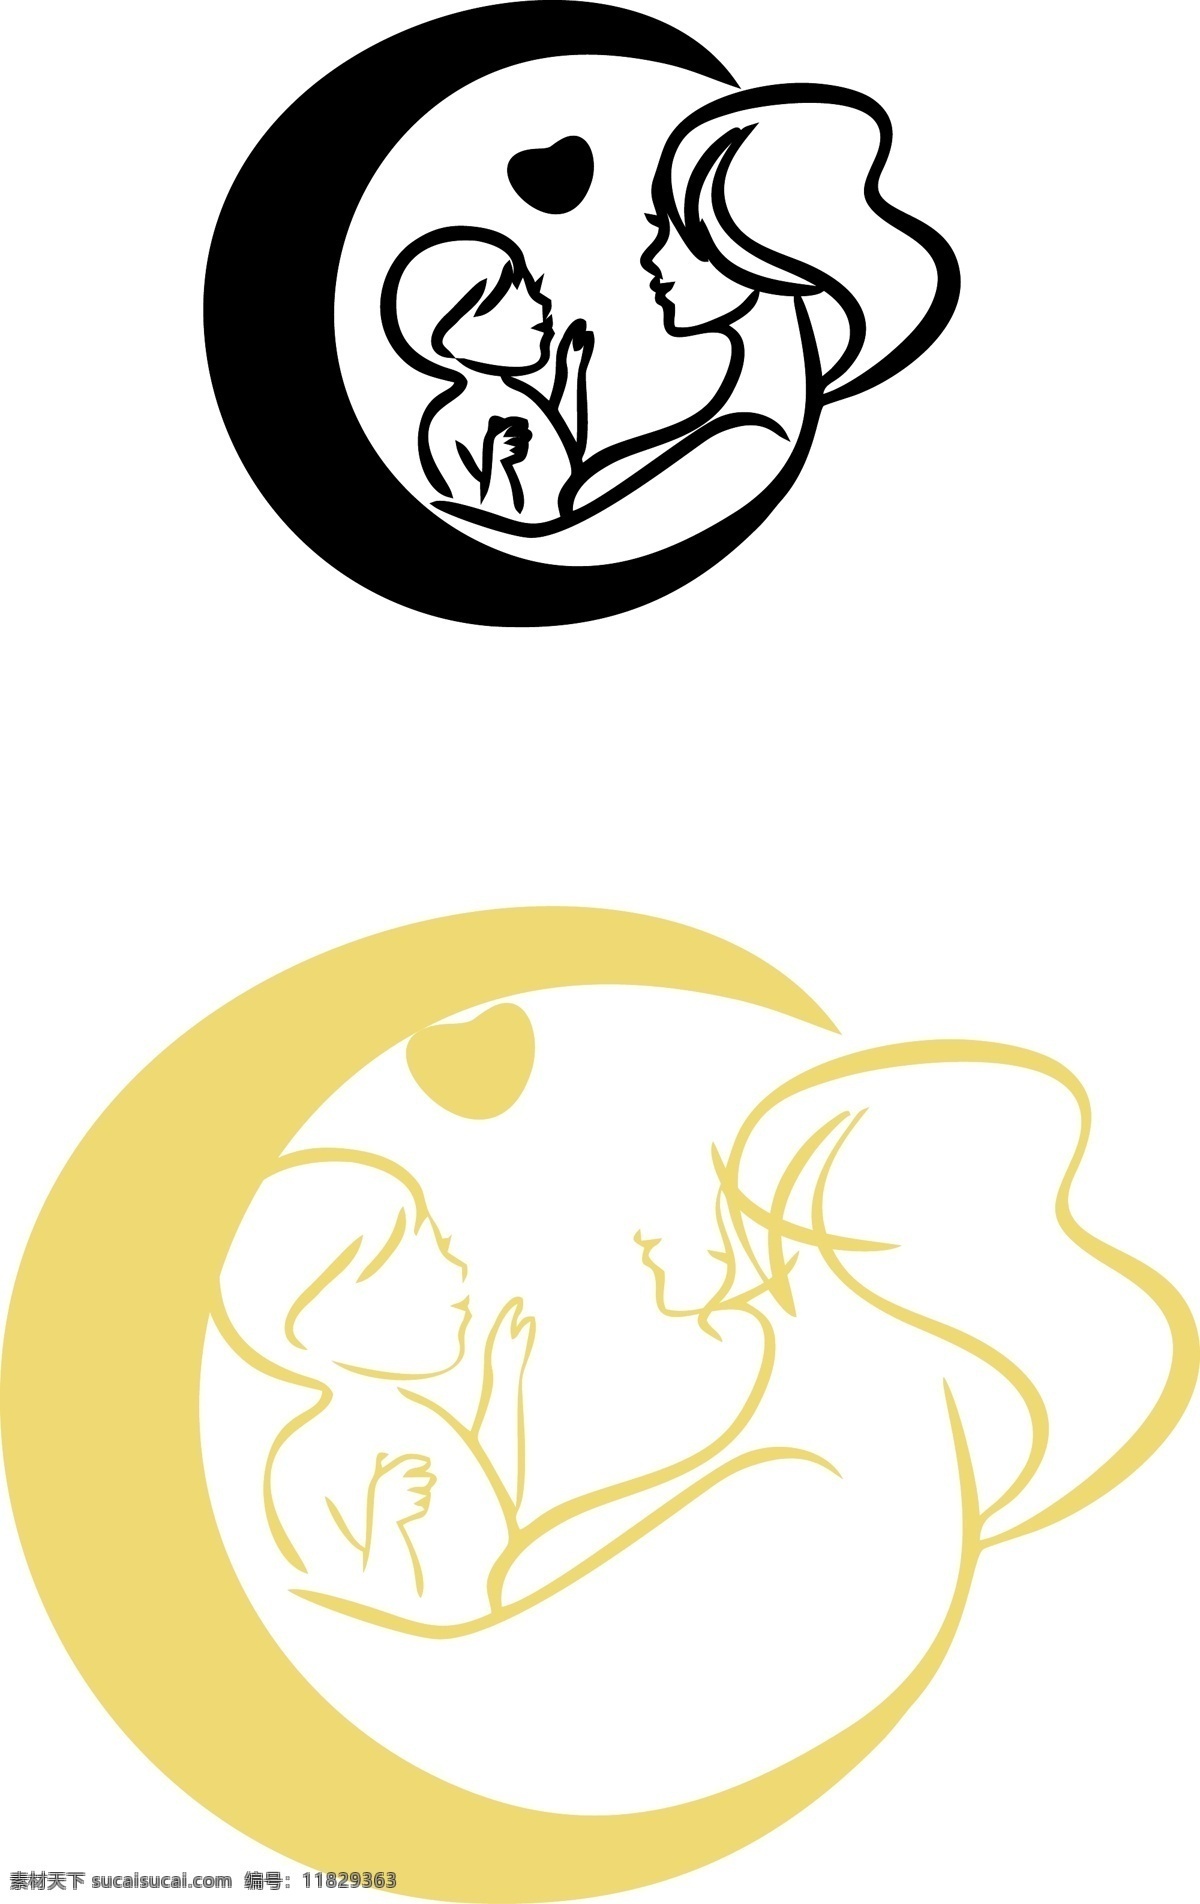 育儿logo 母婴logo 月儿圆 母亲logo 婴儿 母婴 logo设计 logo 奶粉logo logo母婴 月儿 圆 矢量母婴